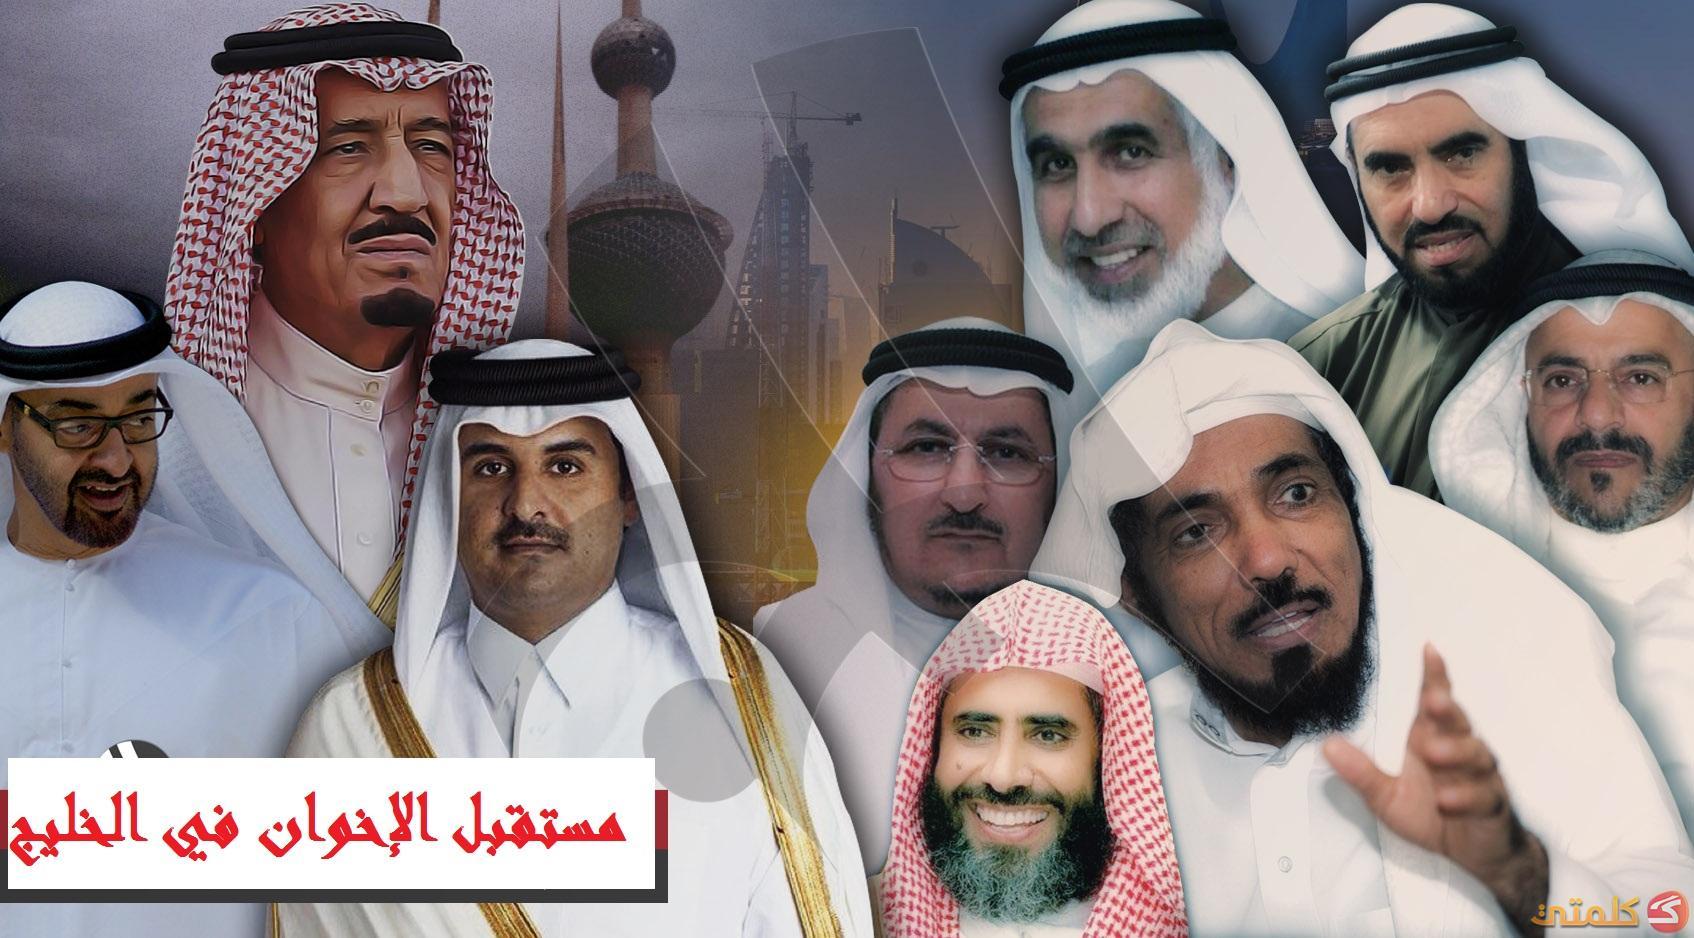 واشنطن بوست ترصد مستقبل الإخوان المسلمين في الخليج